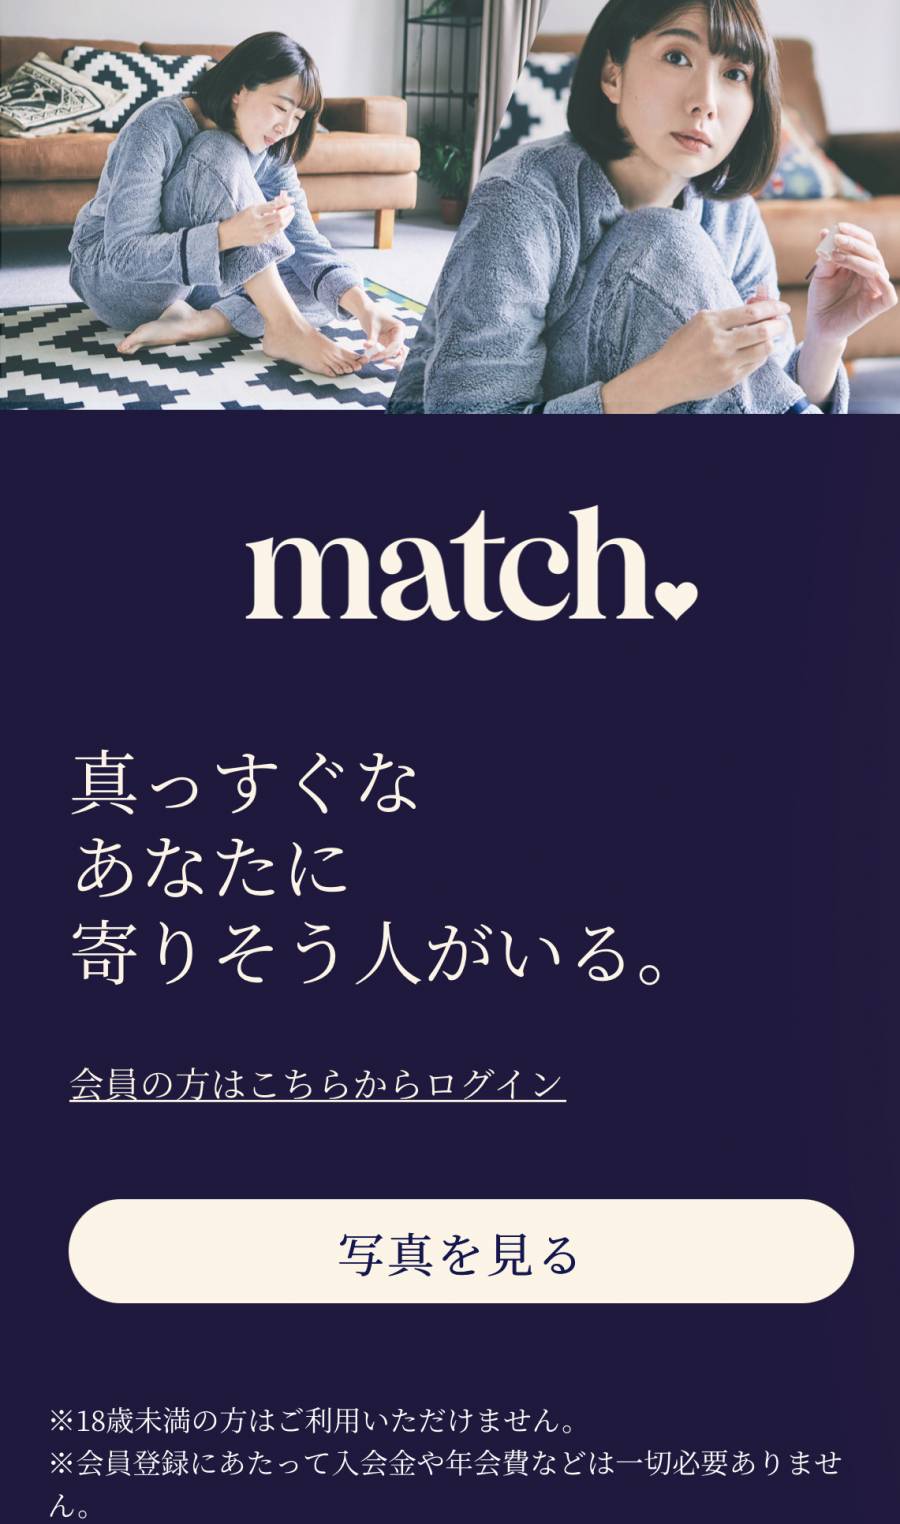 matchのトップ画像